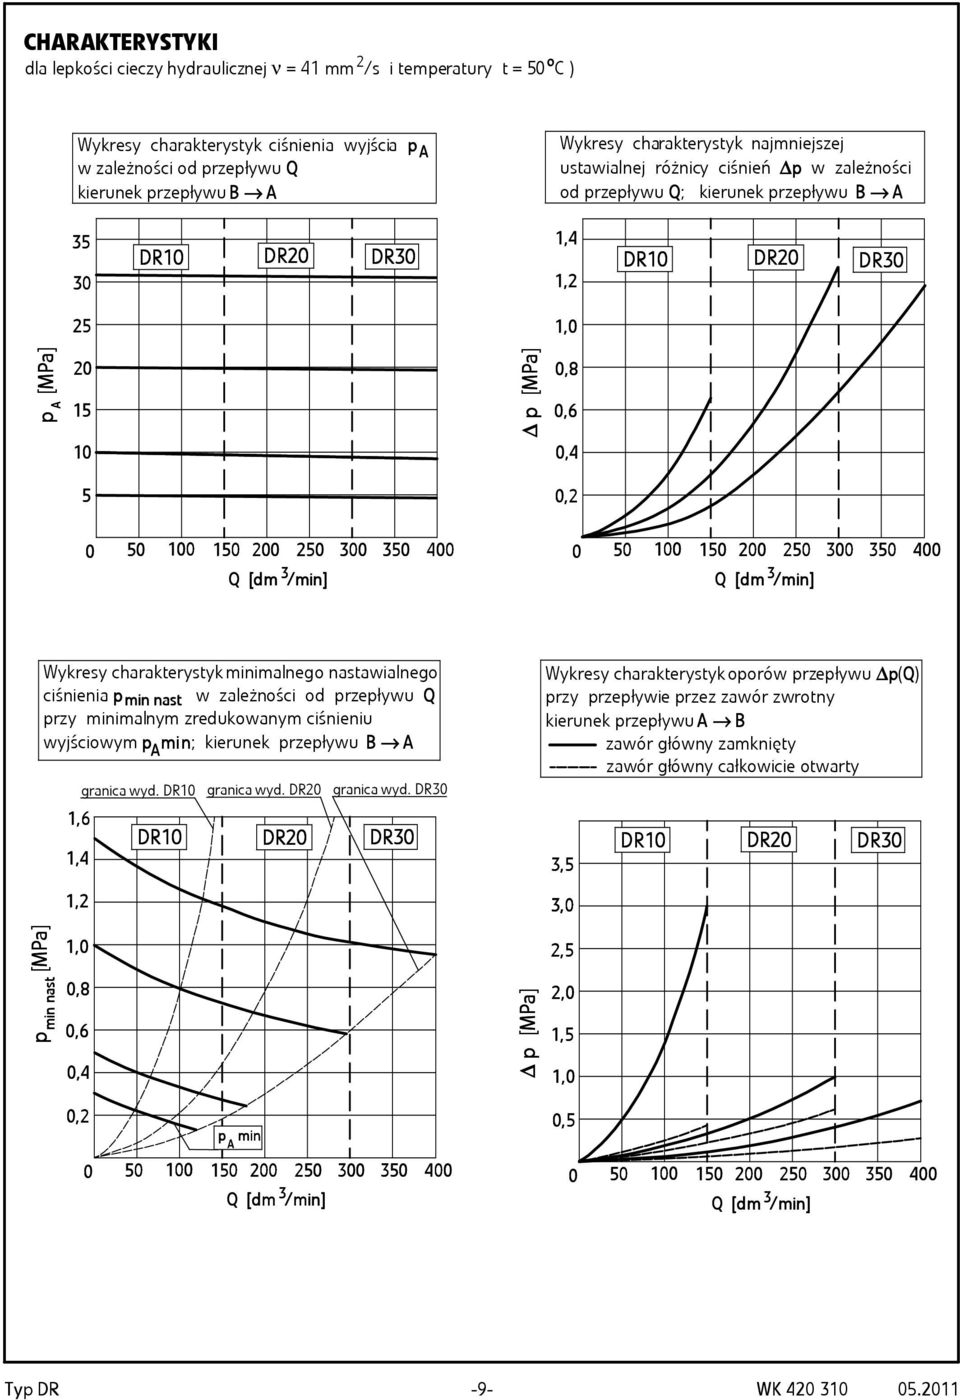 00 50 00 Q [dm /min / min] 0 50 100 150 00 50 00 50 00 Q [dm /min / min] Wykresy charakterystyk minimalnego nastawialnego ciśnienia p min nast w zależności od przepływu Q przy minimalnym zredukowanym